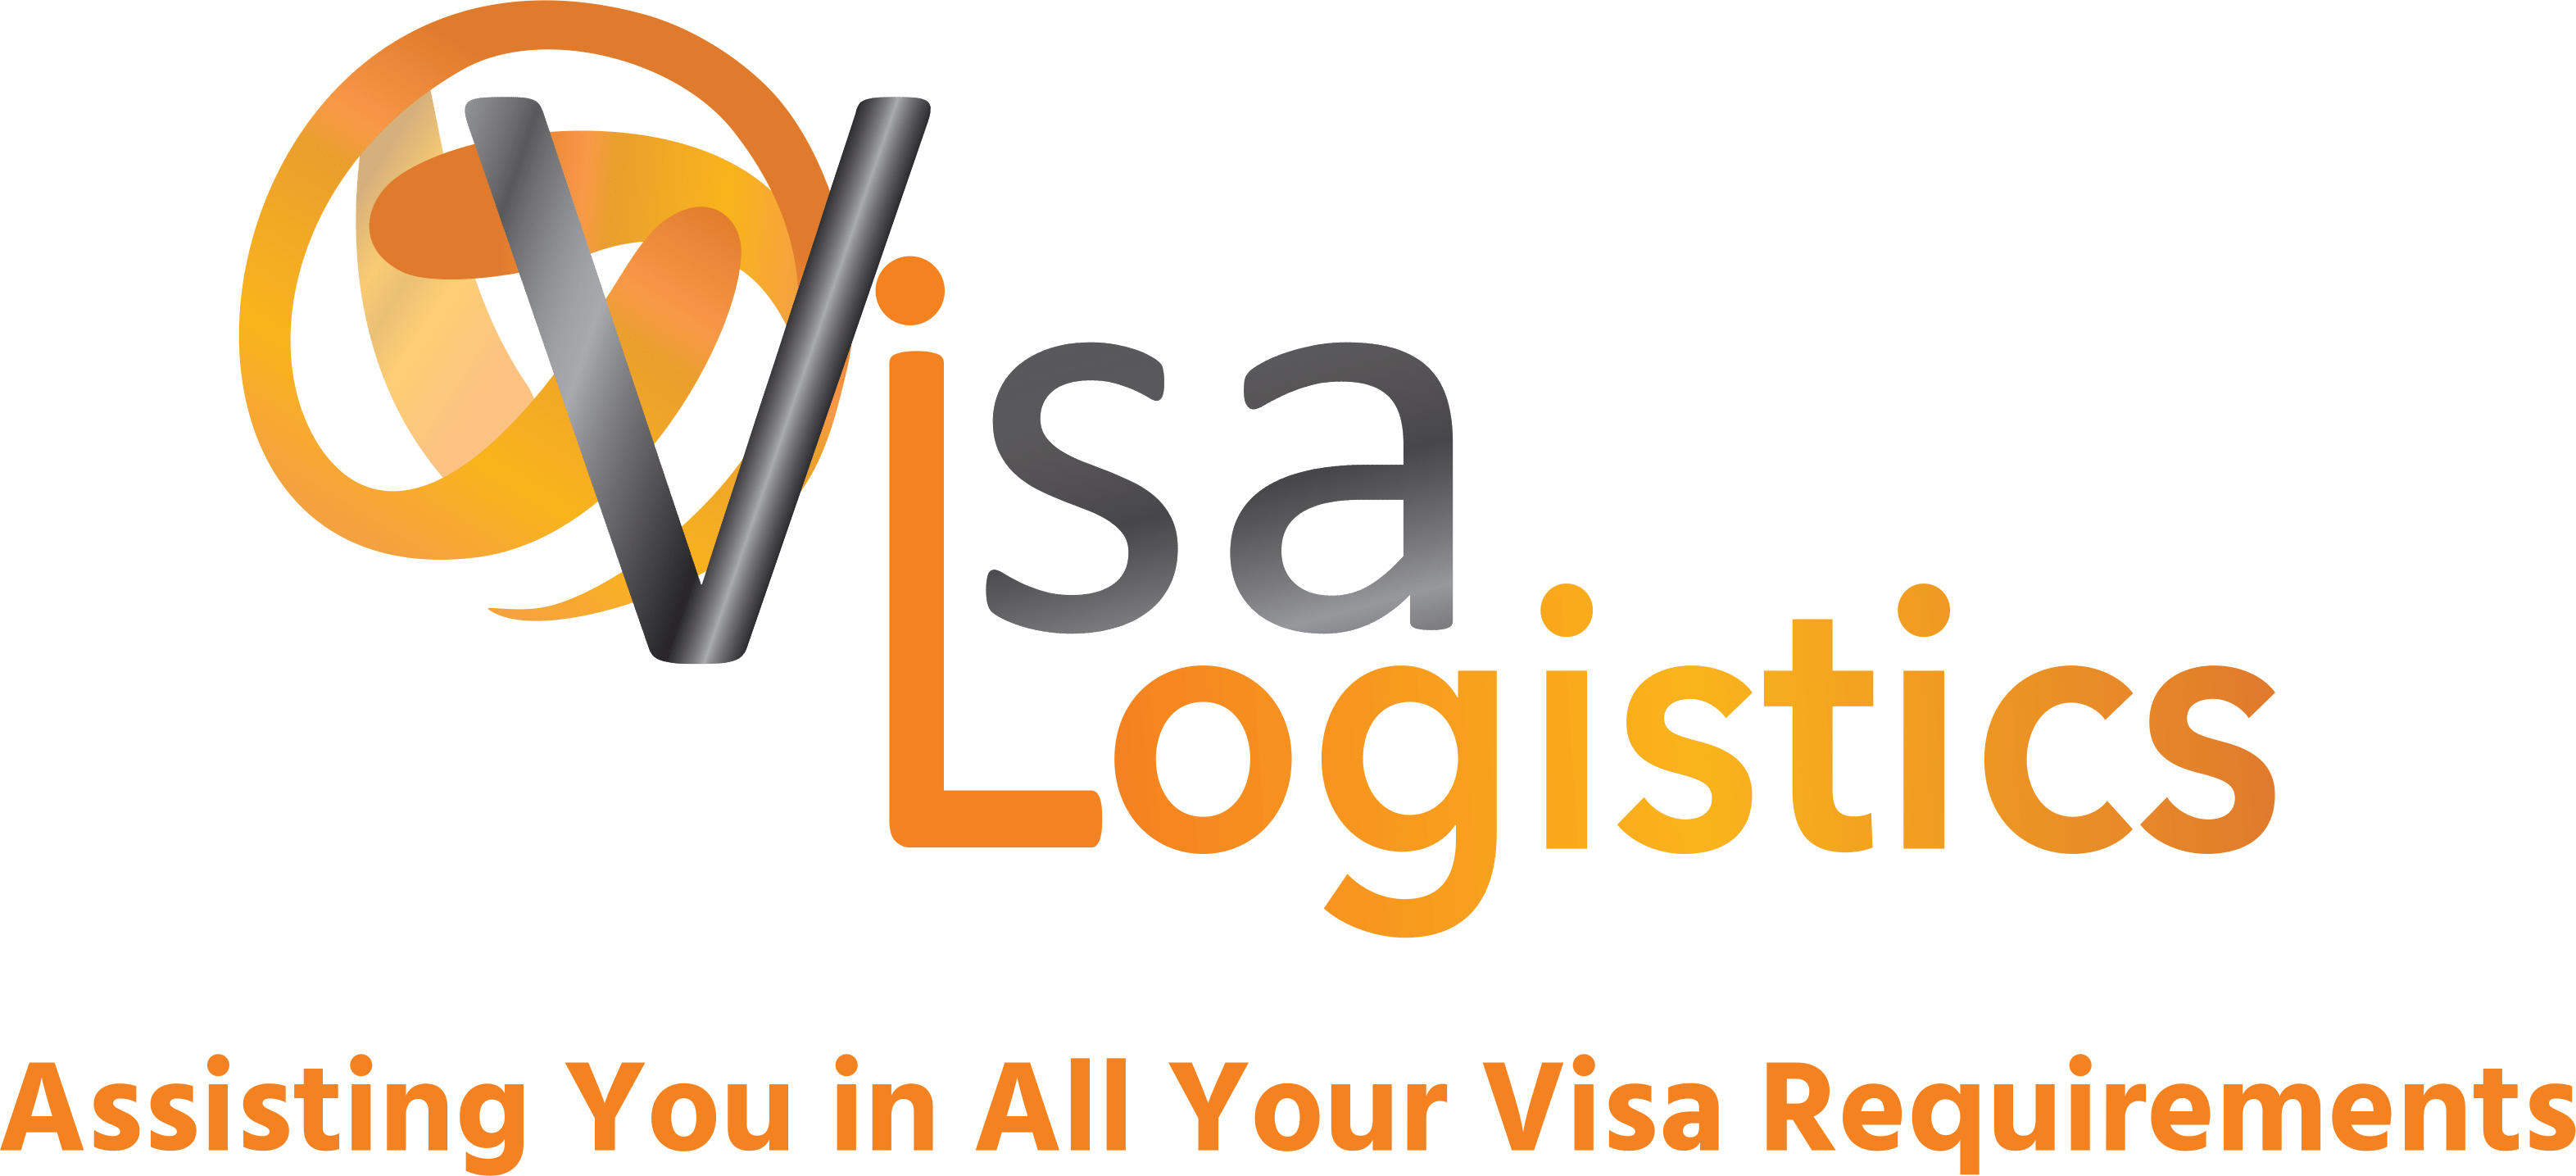 Visa Logistics